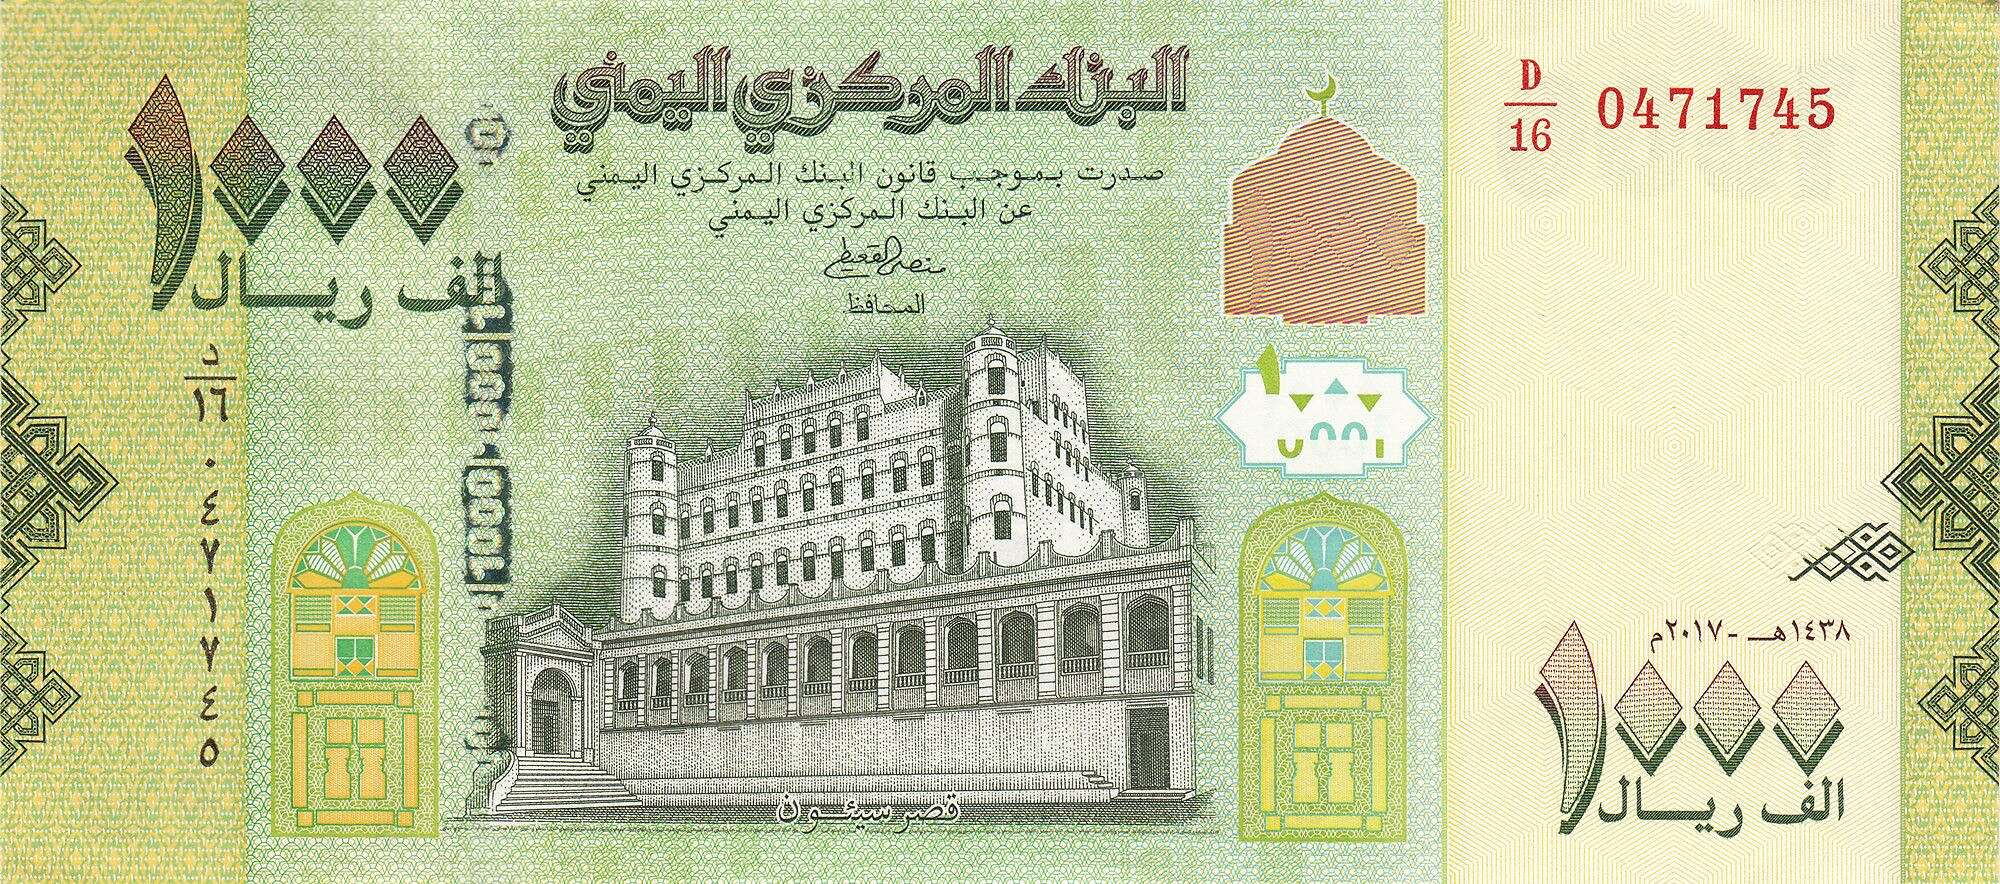 هبوط غير مسبوق للريال اليمني أمام العملات الأجنبية في صنعاء وعدن اليوم.. السعر الآن